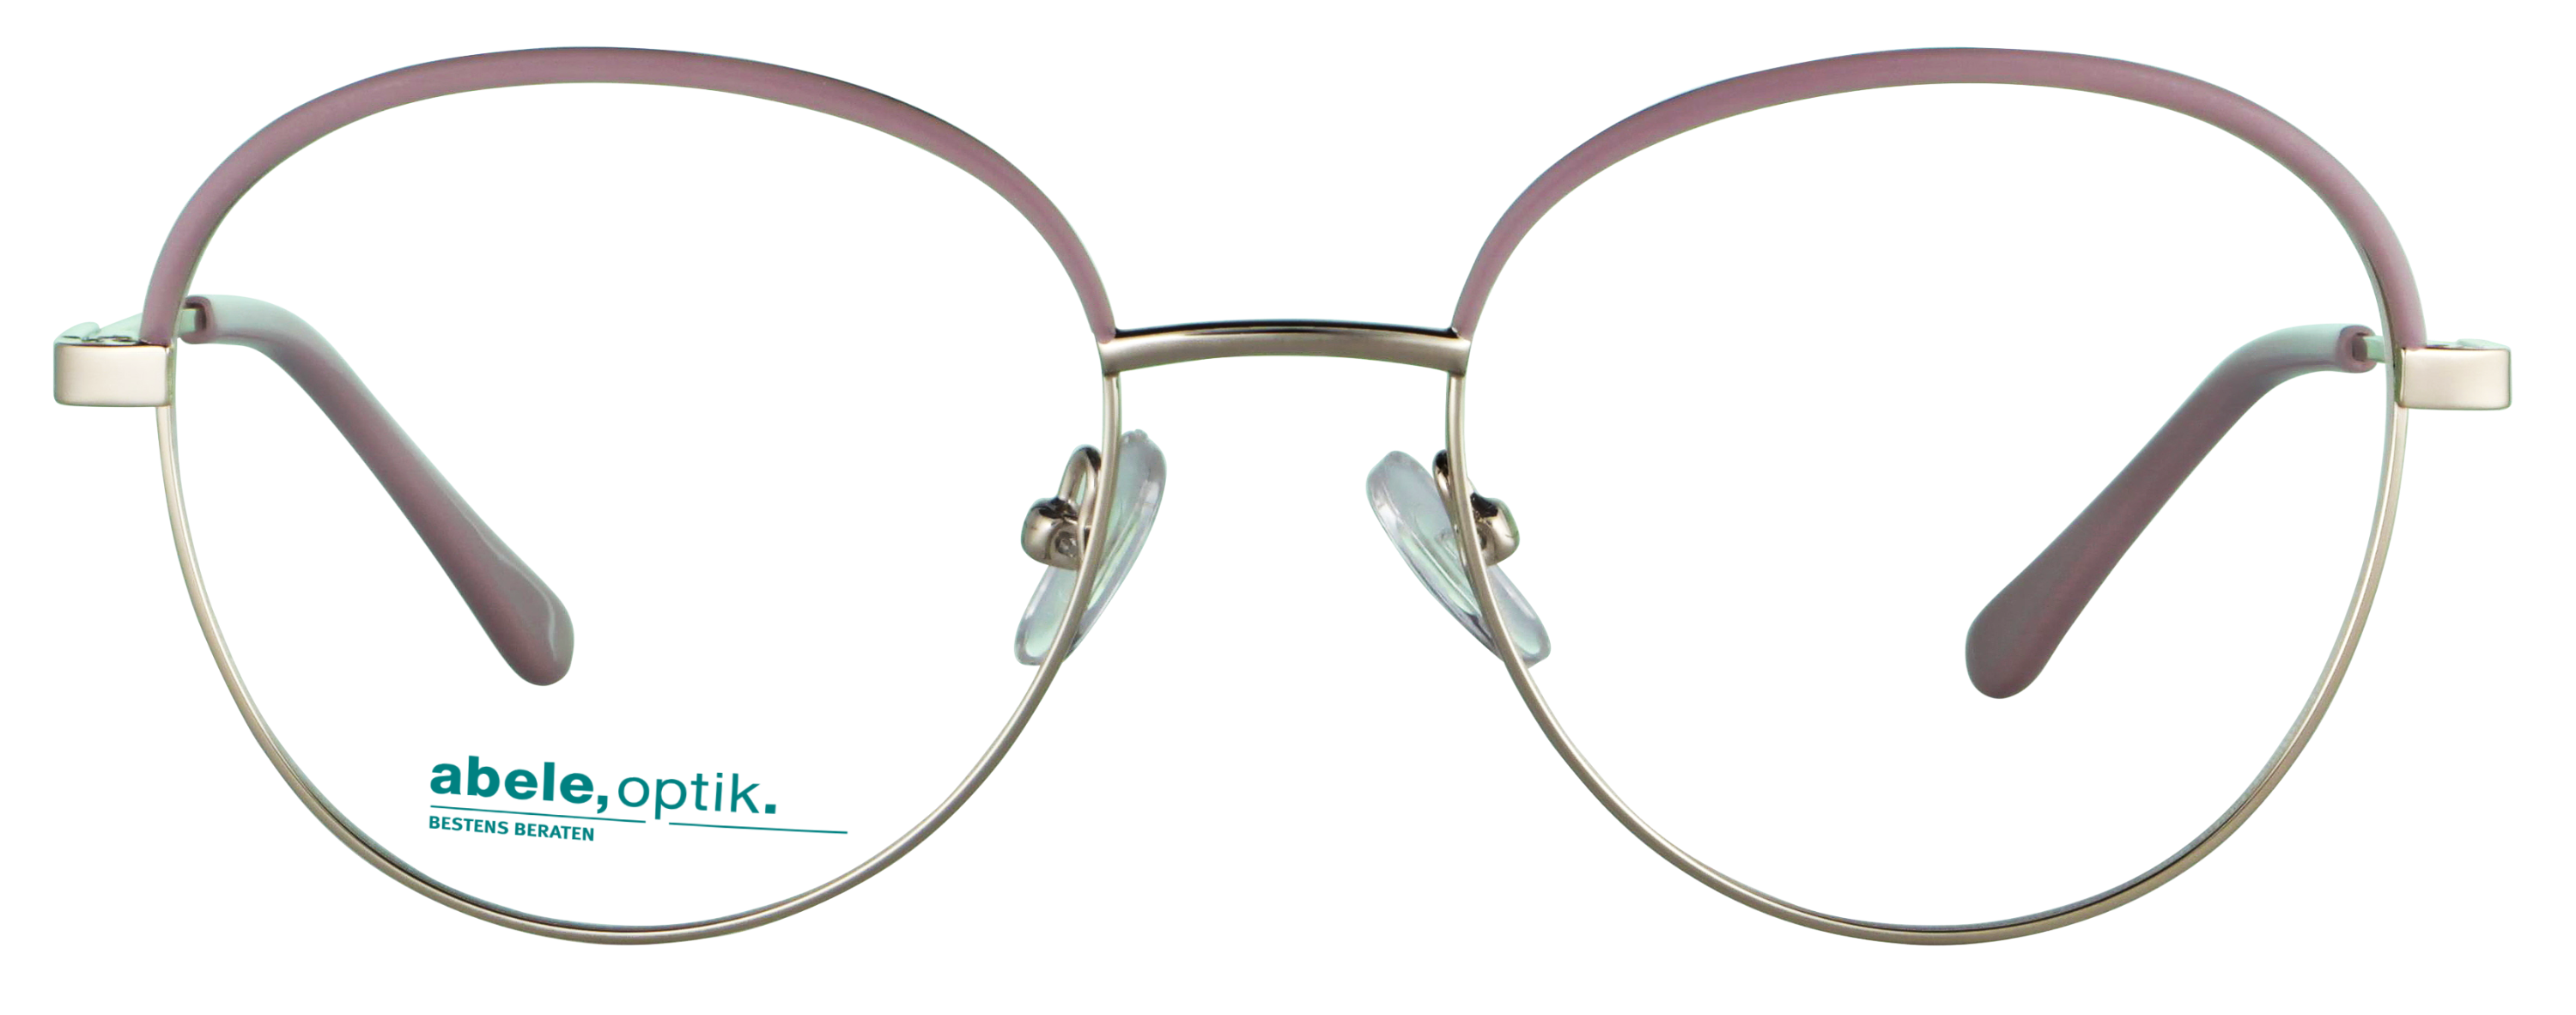 Das Bild zeigt die Korrektionsbrille 143321 von der Marke Abele Optik in rosa - gold.